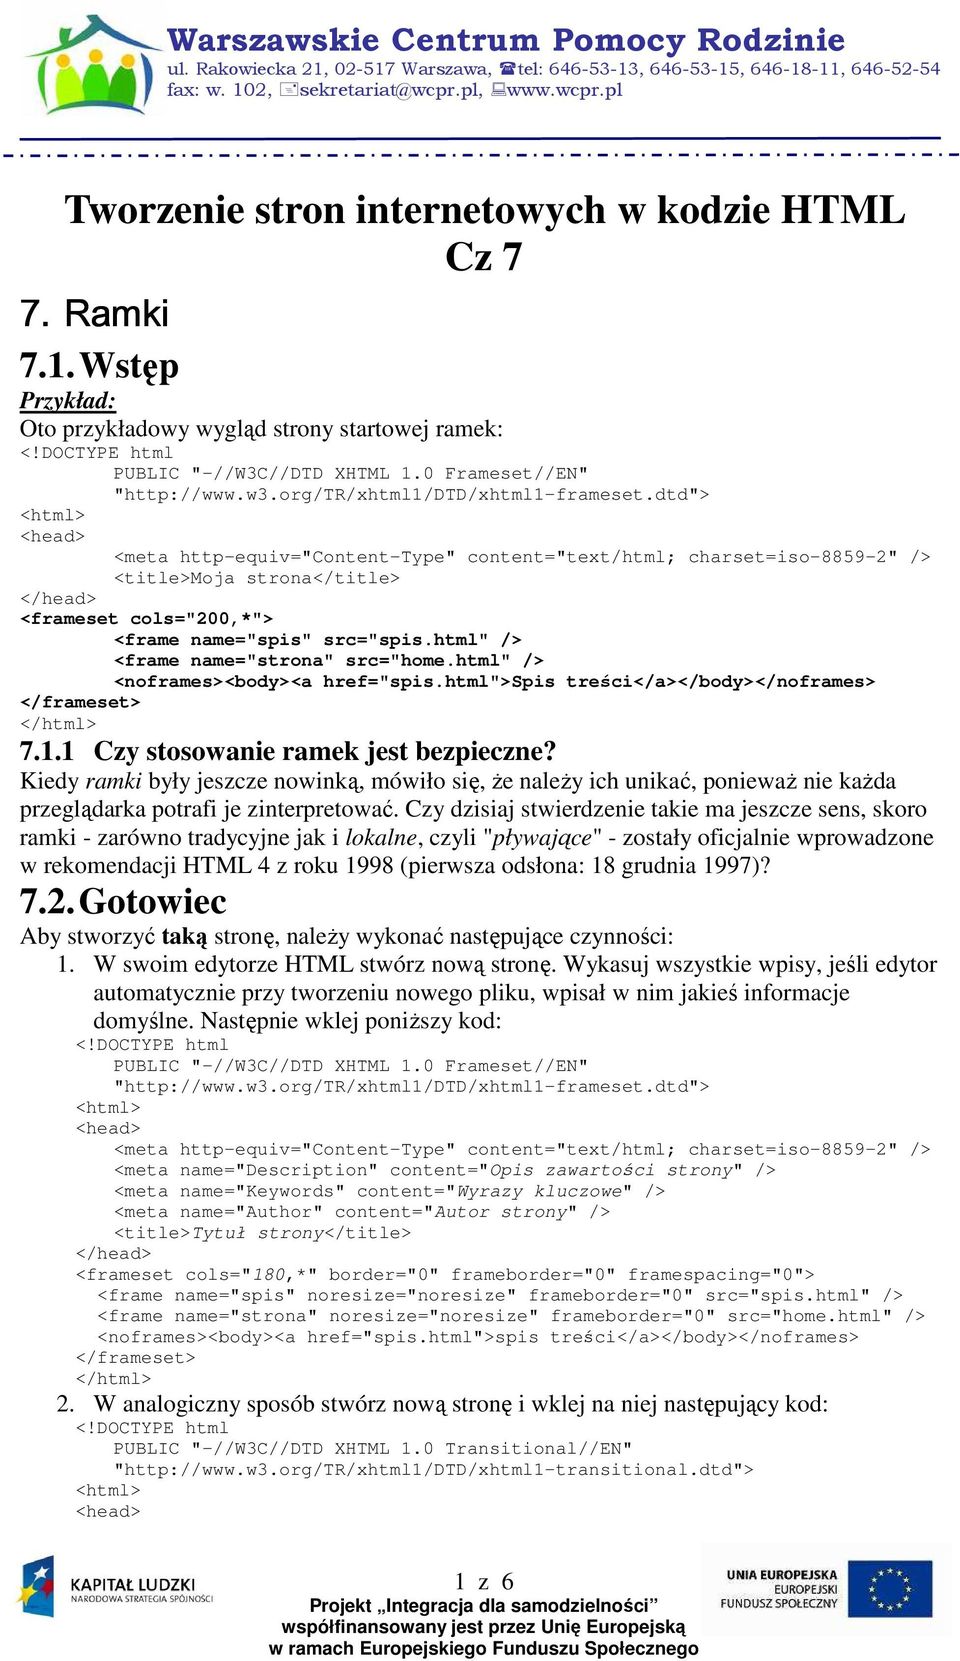 html">spis treści</a></body></noframes> 7.1.1 Czy stosowanie ramek jest bezpieczne?